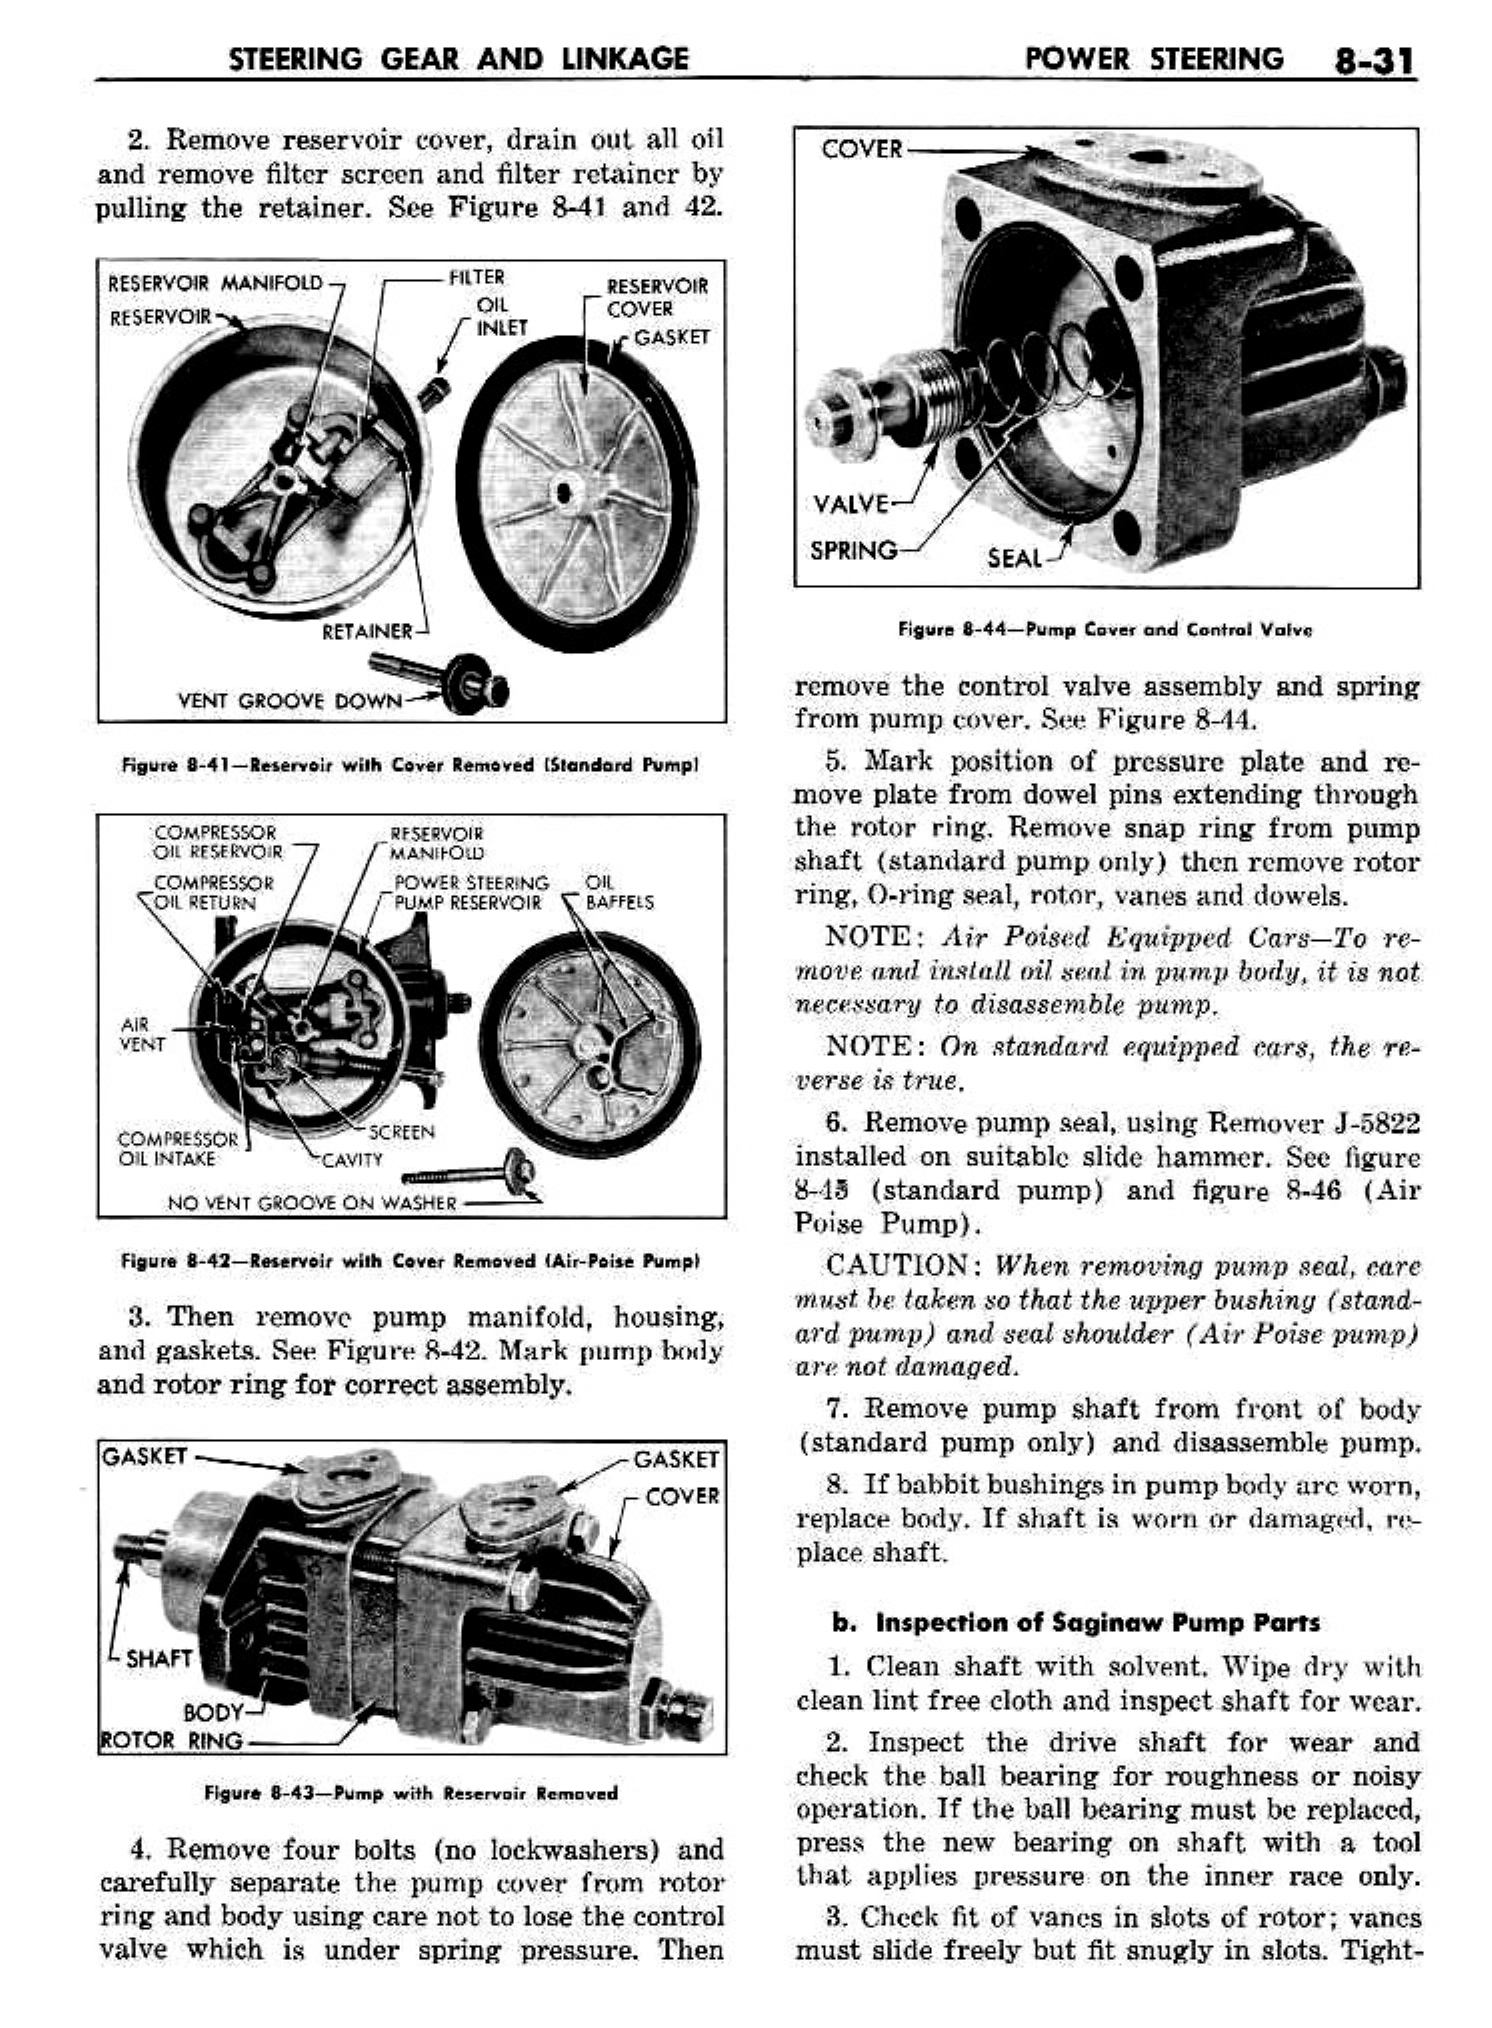 n_09 1958 Buick Shop Manual - Steering_31.jpg